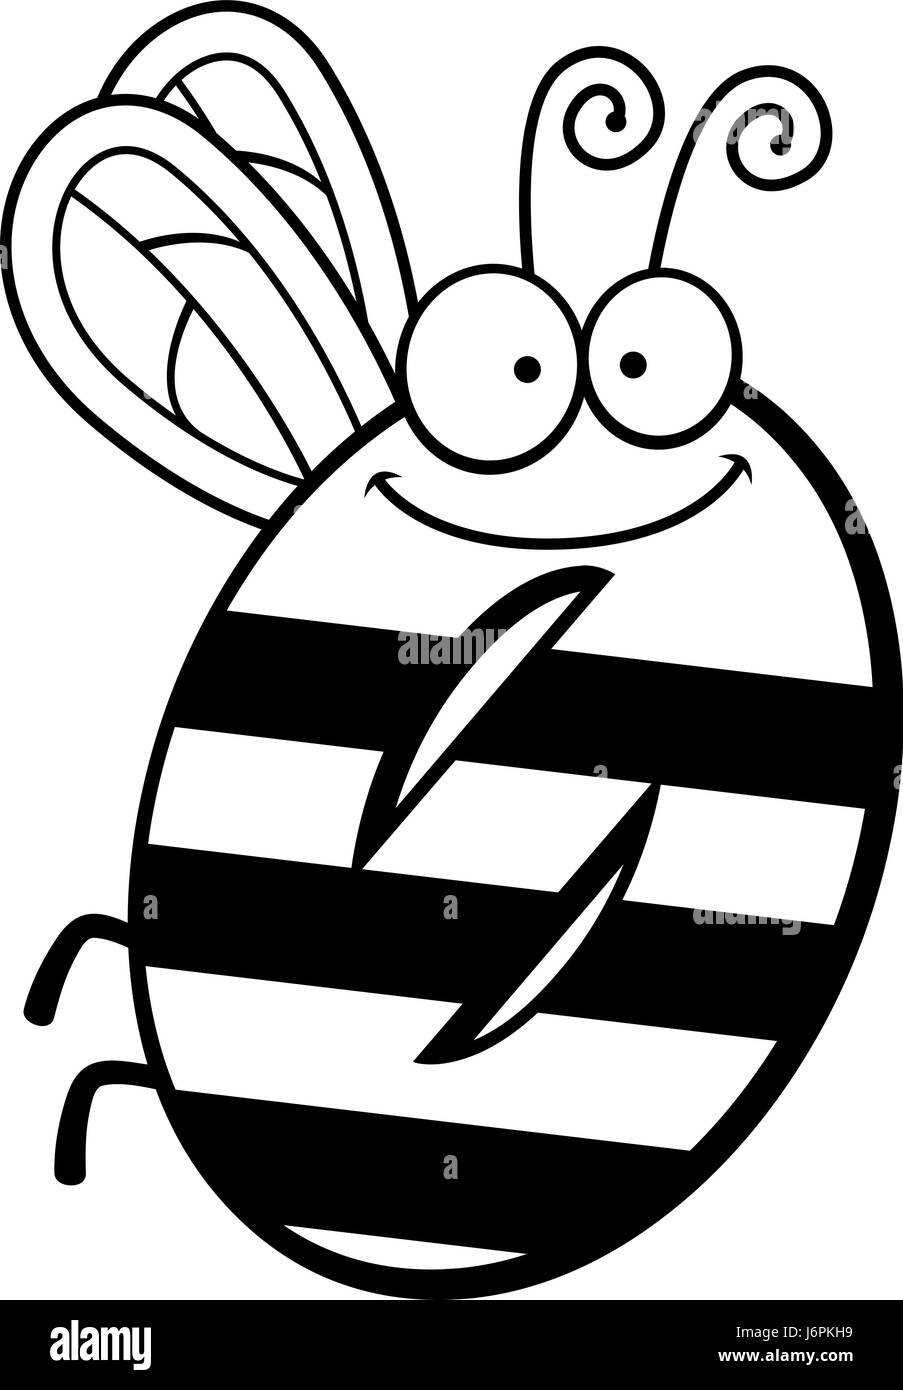 Un cartoon illustrazione del numero zero con un tema di insetti. Illustrazione Vettoriale